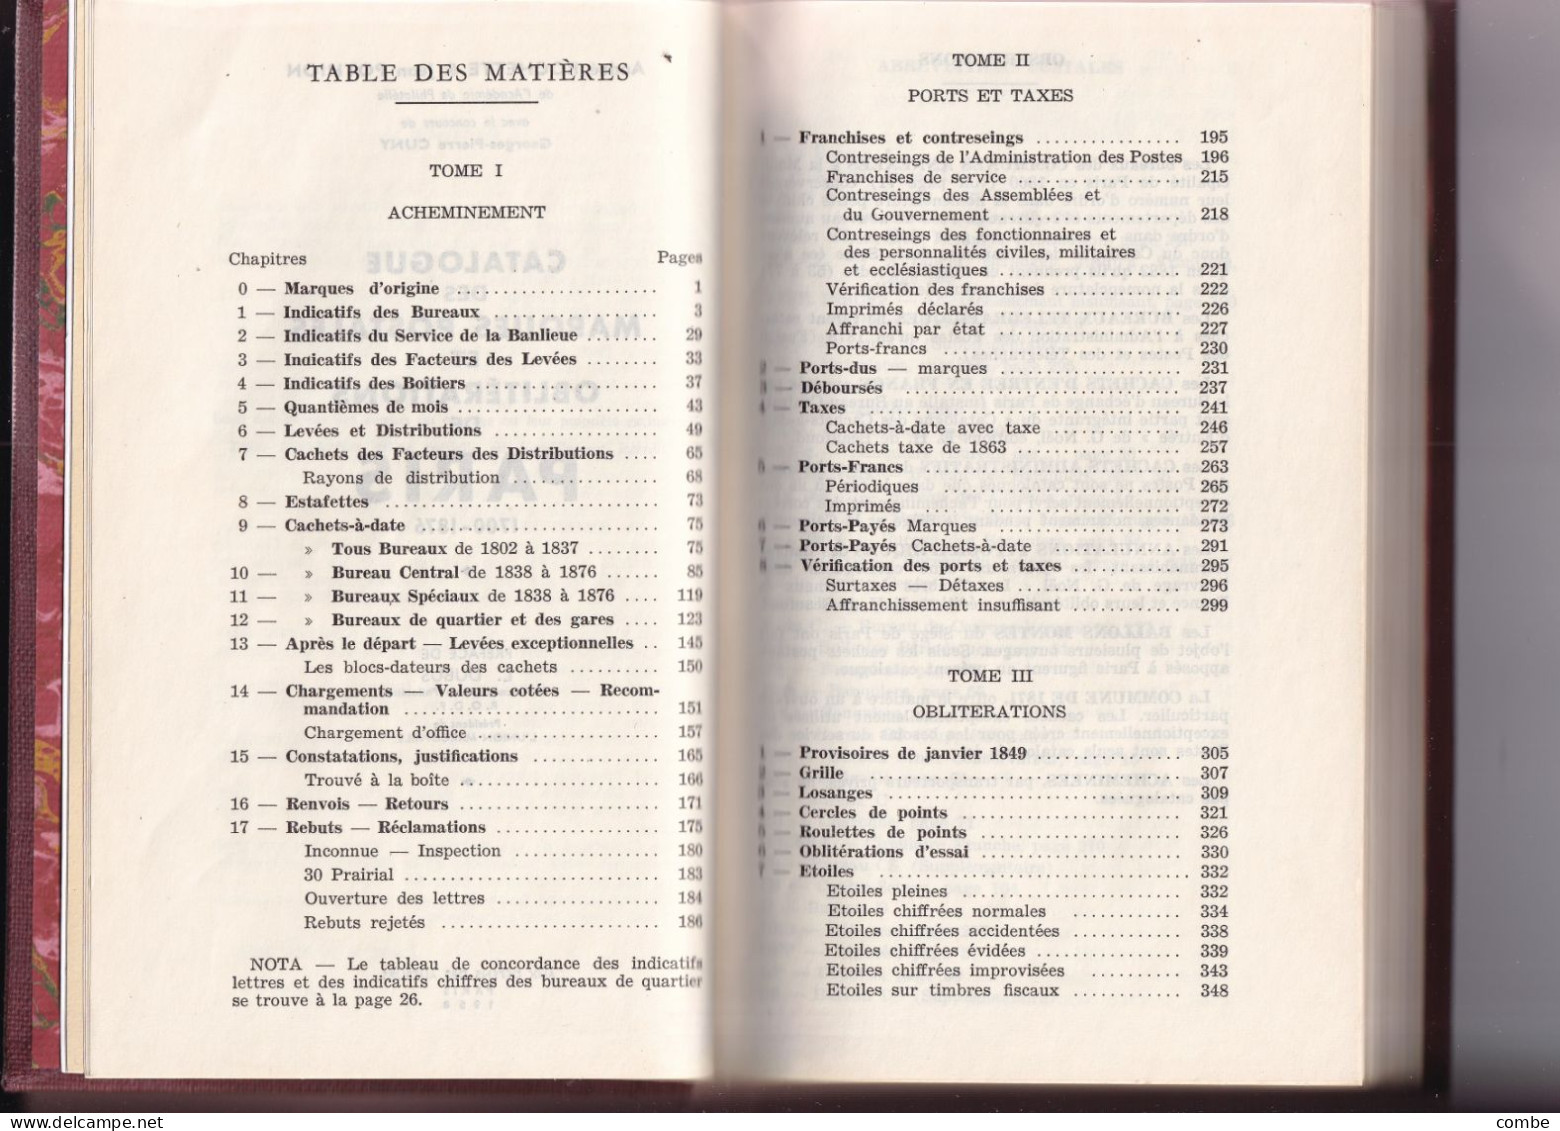 ROCHETTE & POTHION - MARQUES POSTALES ET OBROCHETTE & POTHION - MARQUES POSTALES ET OBL. DE PARIS 1700 - 1876. BROCHÉ